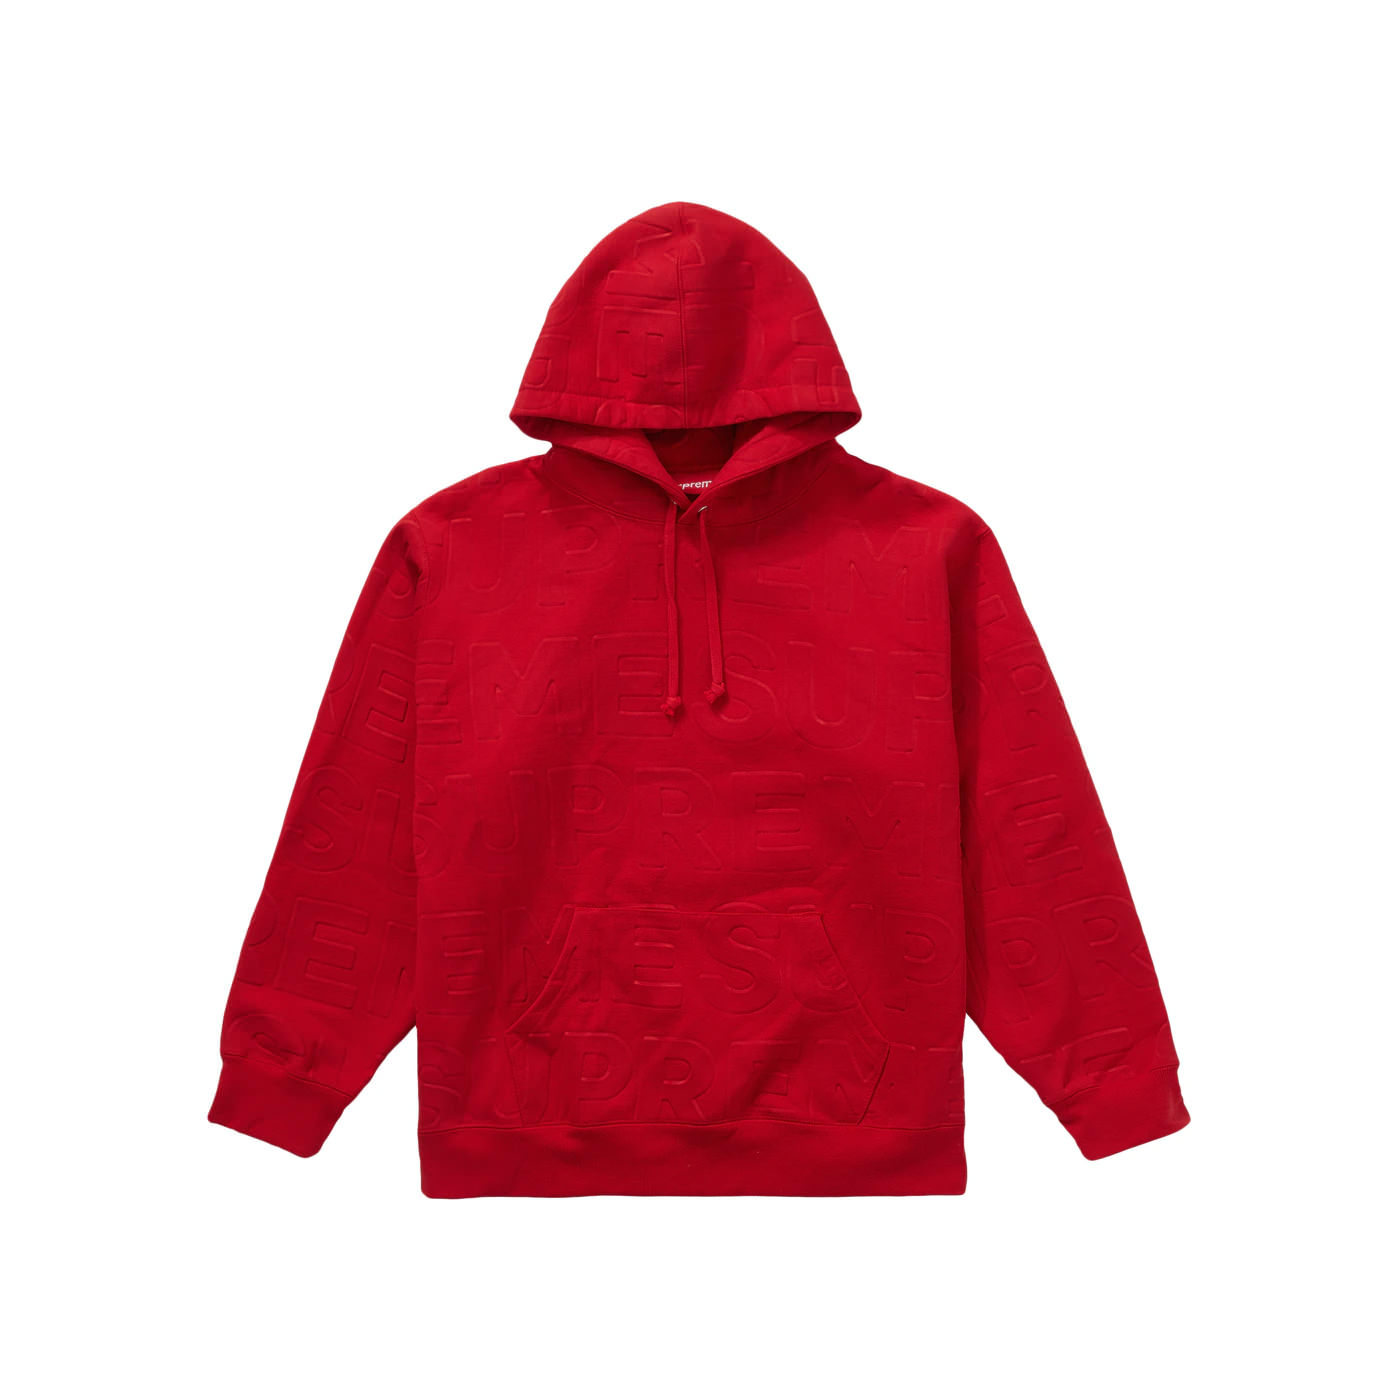 Supreme Embossed Logos Hooded Sweatshirt RedSupreme Embossed Logos